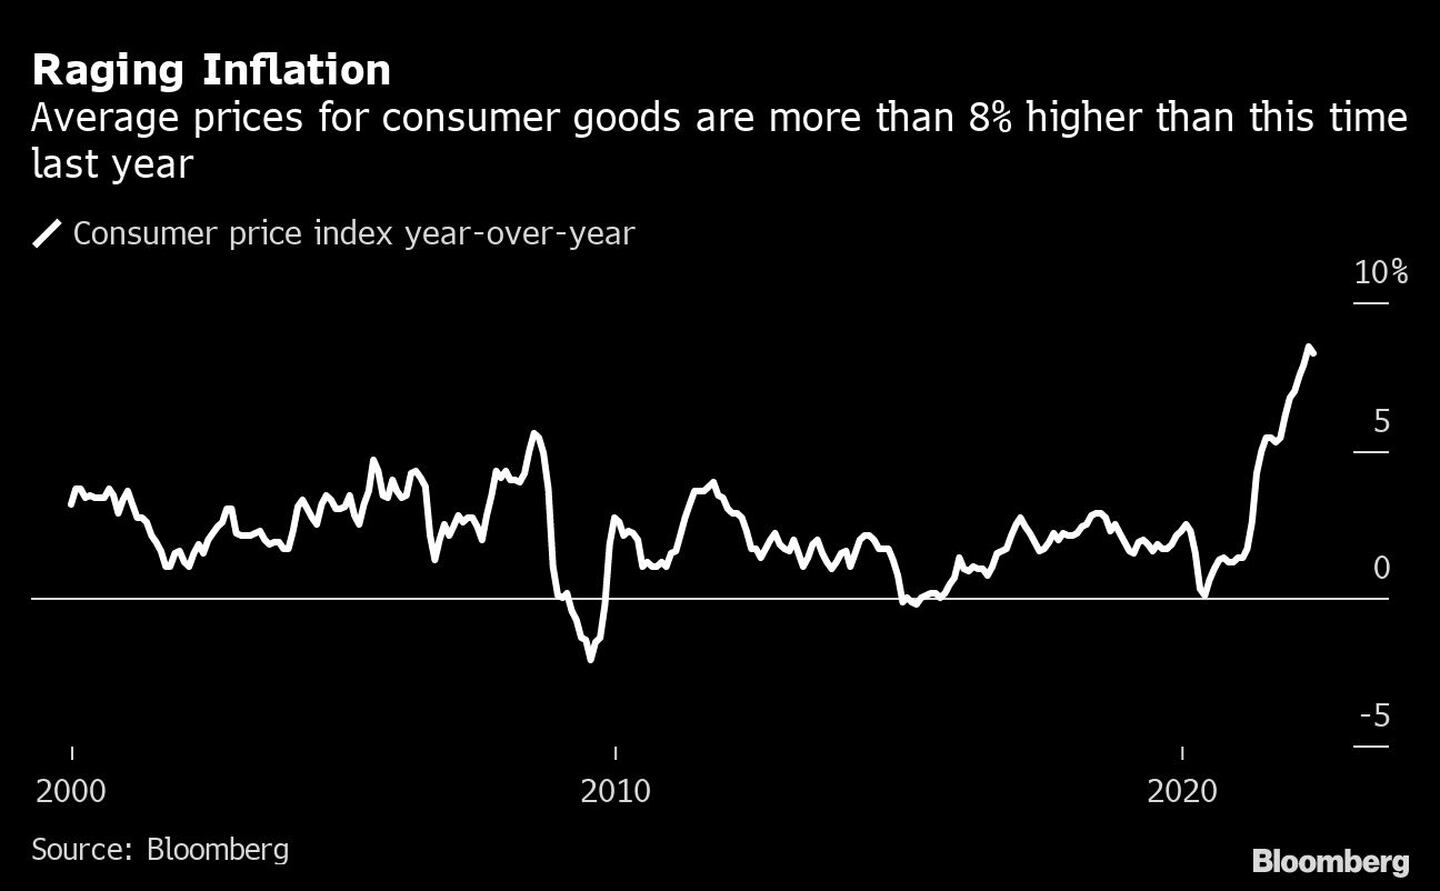 Los precios promedio de los bienes de consumo son más de un 8% superiores a los del año pasado.dfd